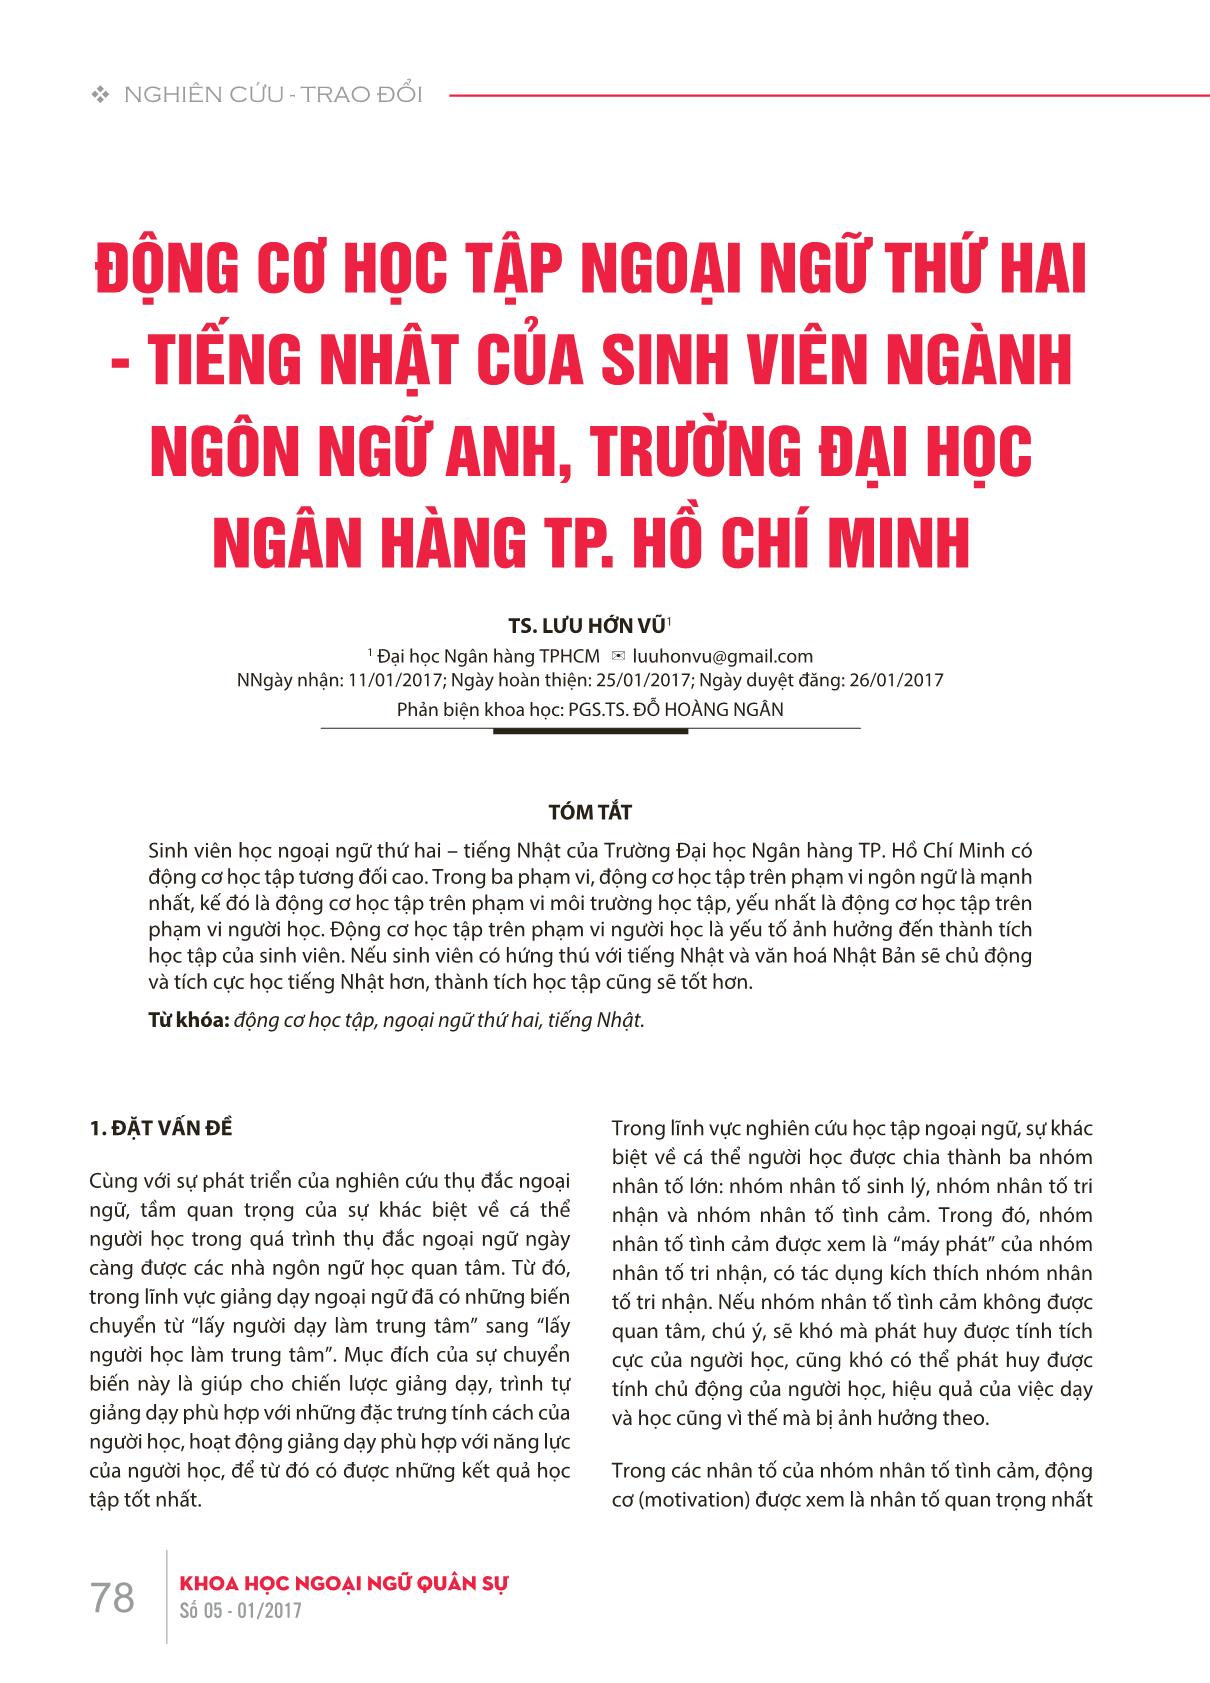 Động cơ học tập ngoại ngữ thứ hai - Tiếng Nhật của sinh viên ngành Ngôn ngữ Anh, trường Đại học Ngân hàng thành phố Hồ Chí Minh trang 1